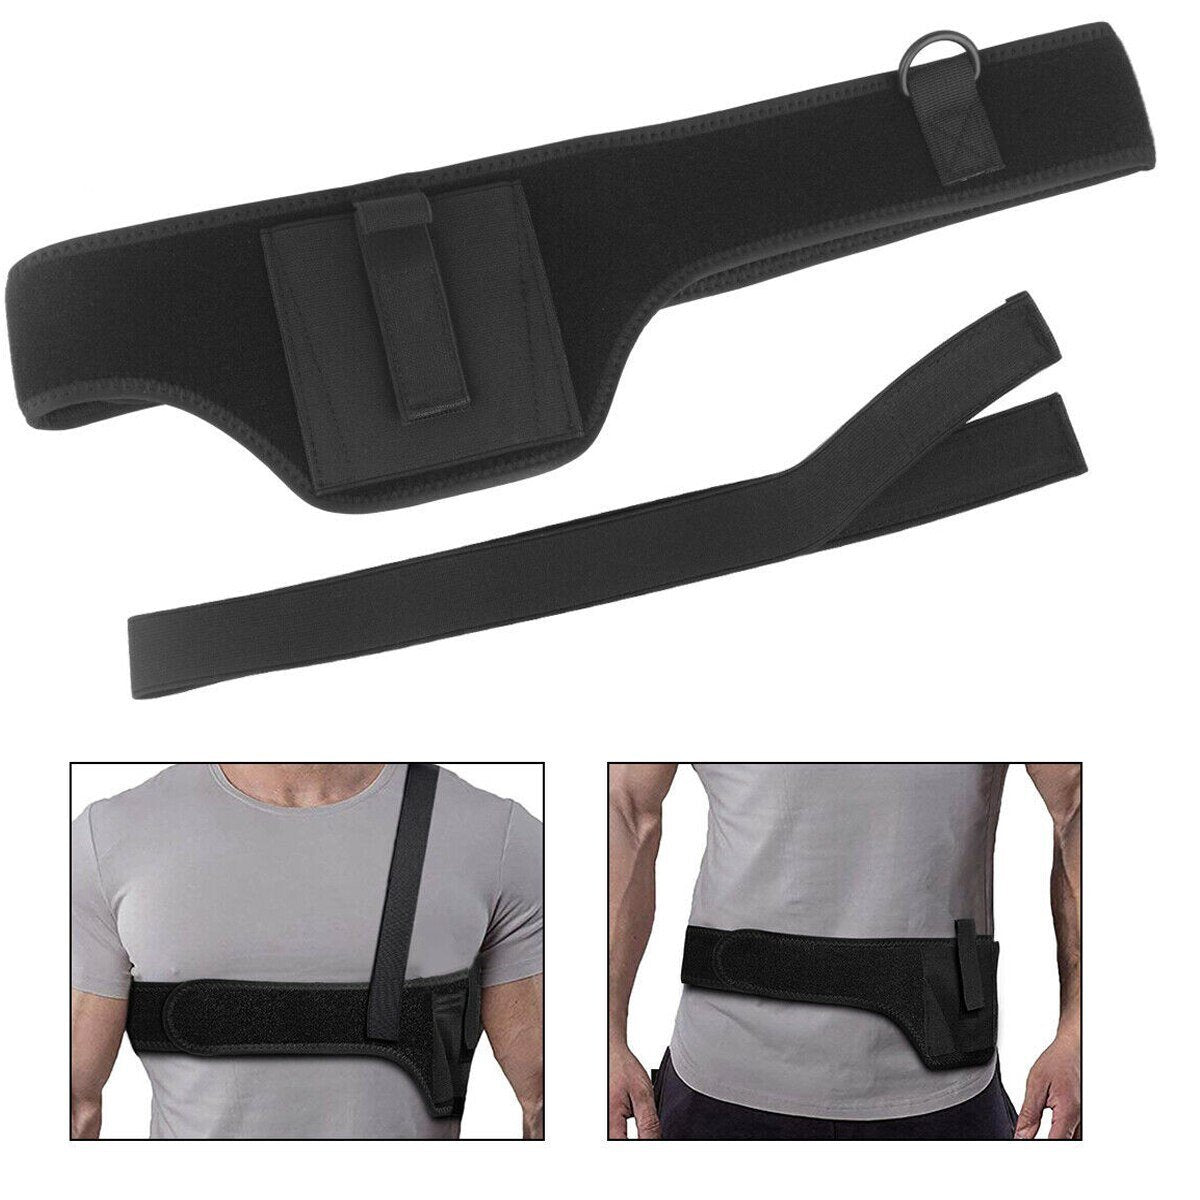 Shoulder Holster For Concealed Carry